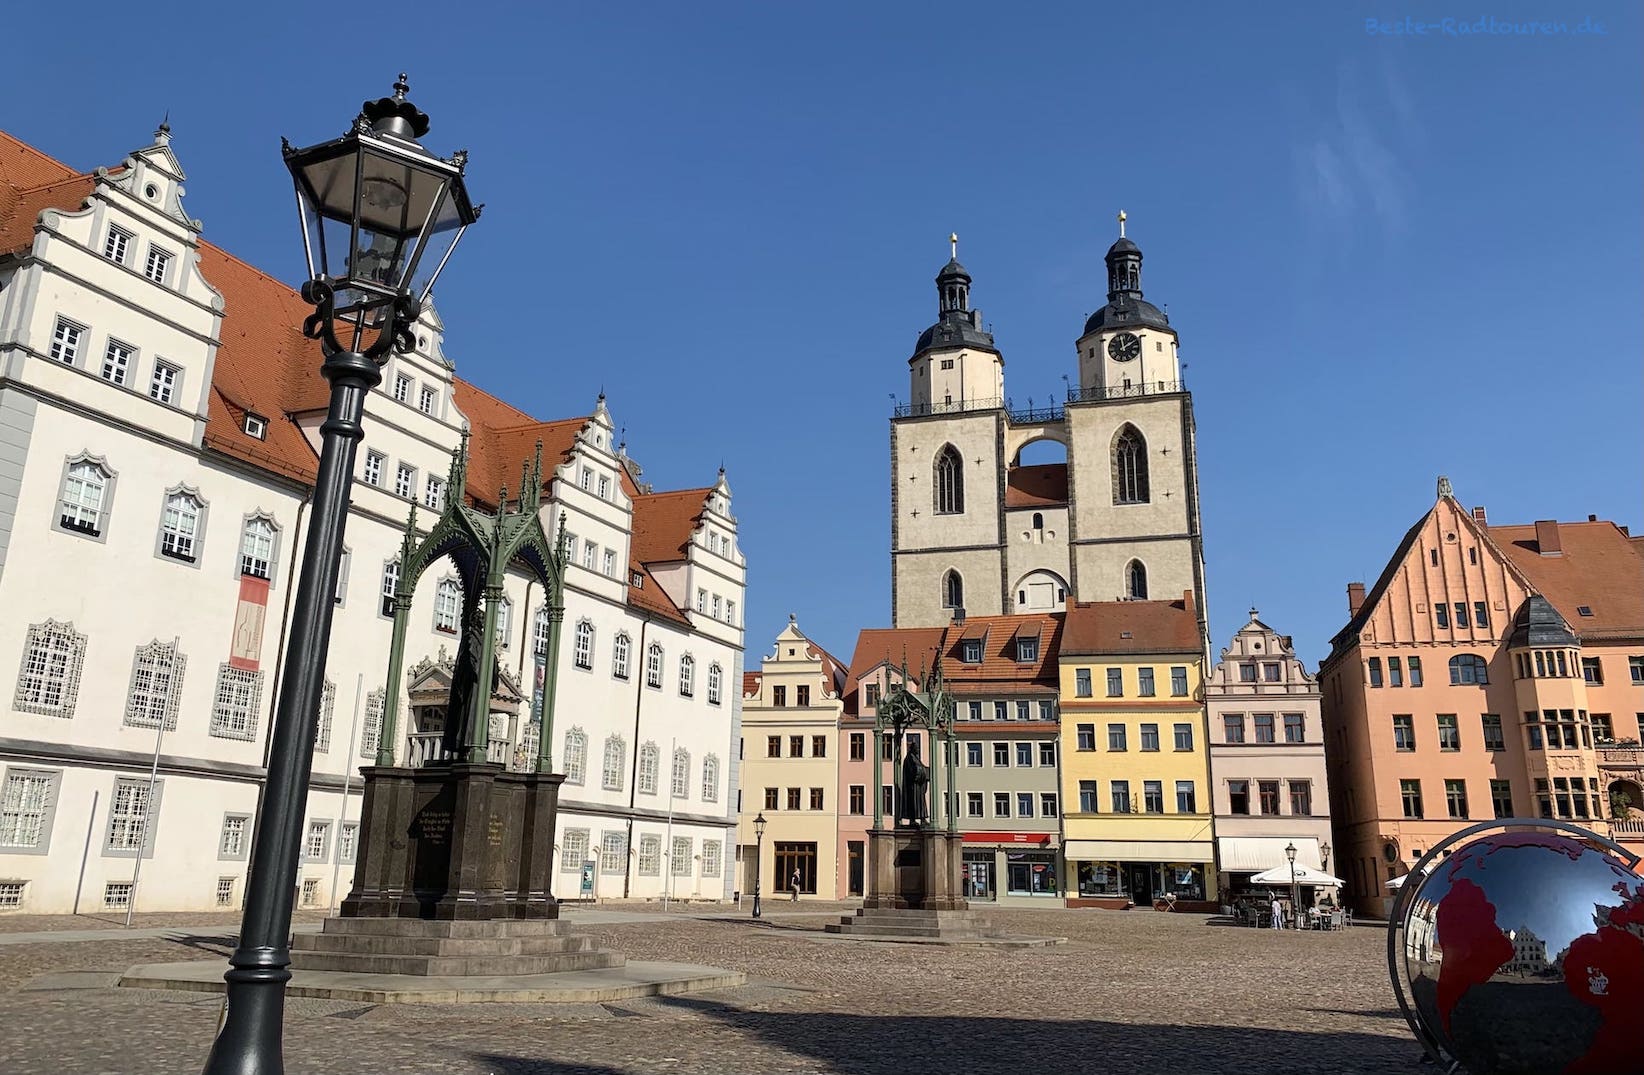 Marktplatz der Lutherstadt Wittenberg: Links das Rathaus, hinten die Türme der Stadtkirche